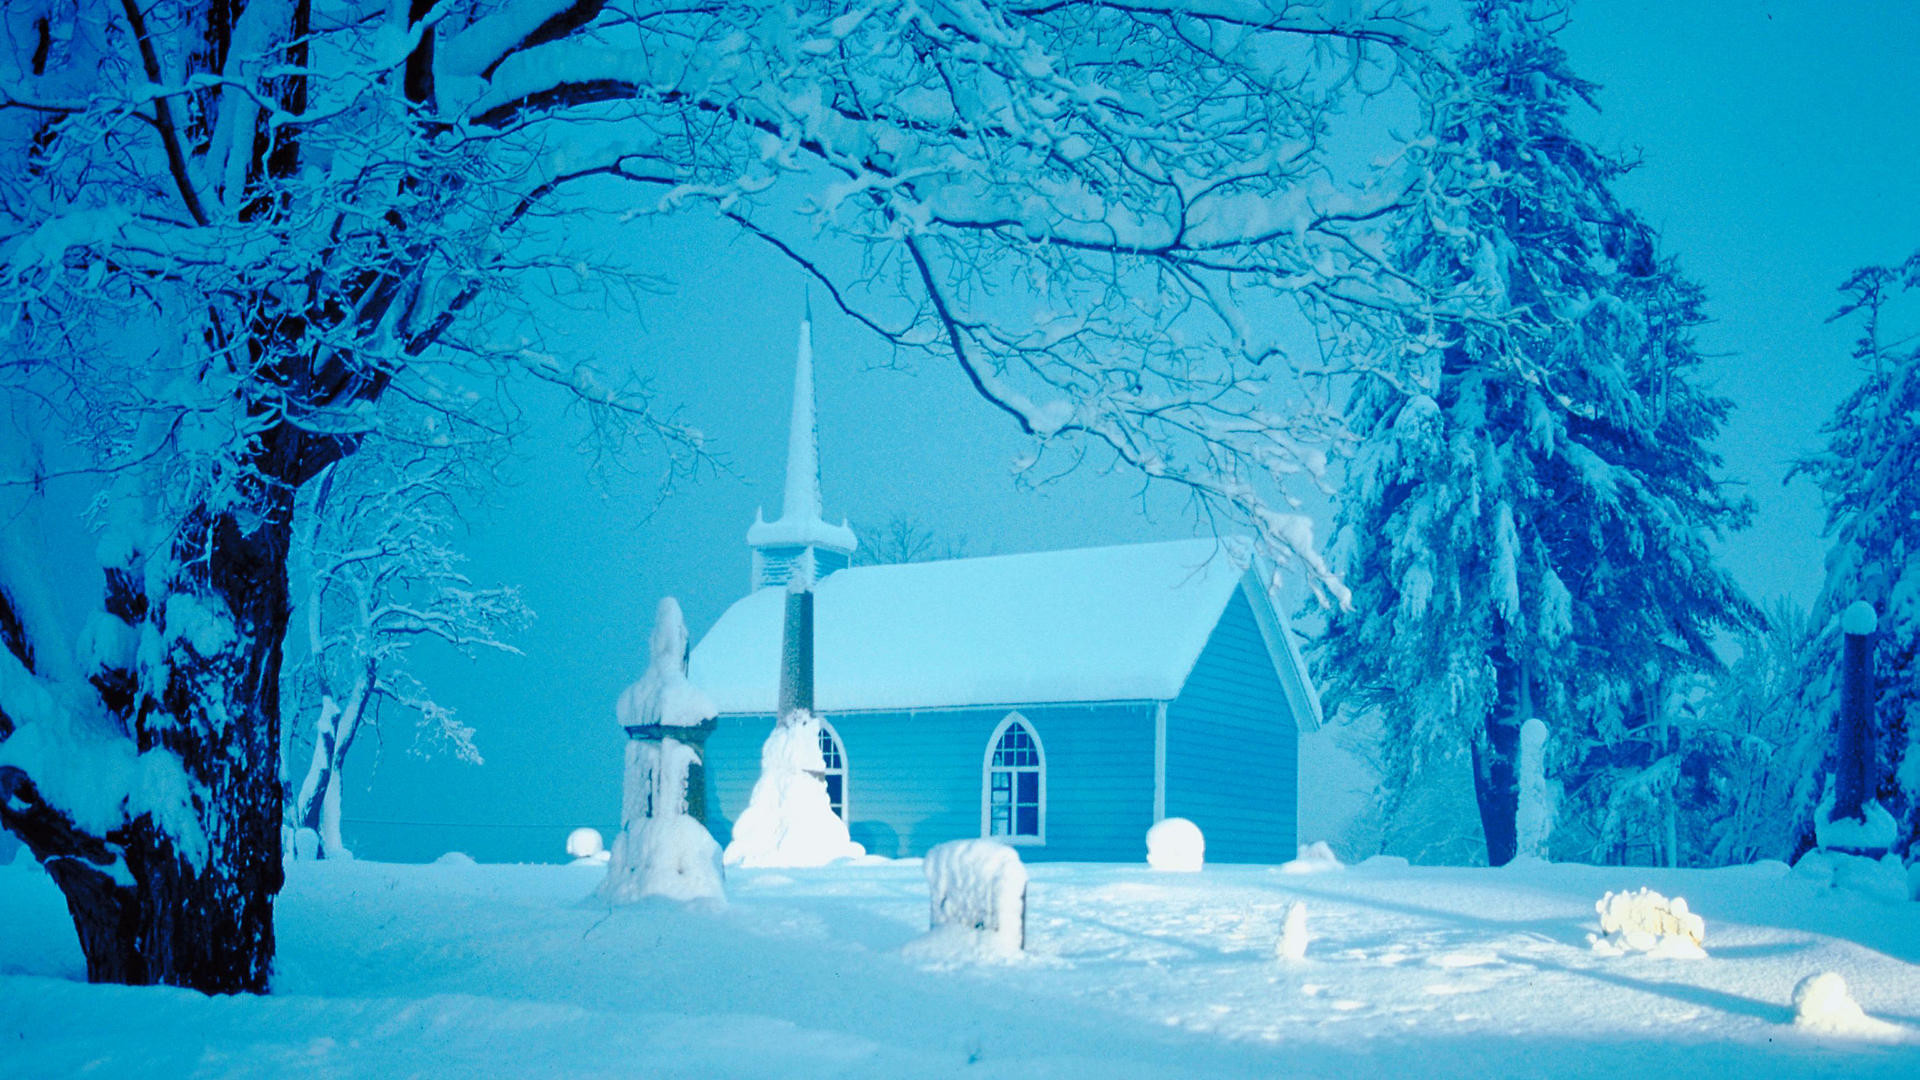 Beautiful Winter Landscapes Amazing Scenery. HD Wallpaper. Snow scenes, Wallpaper and Winter landscape